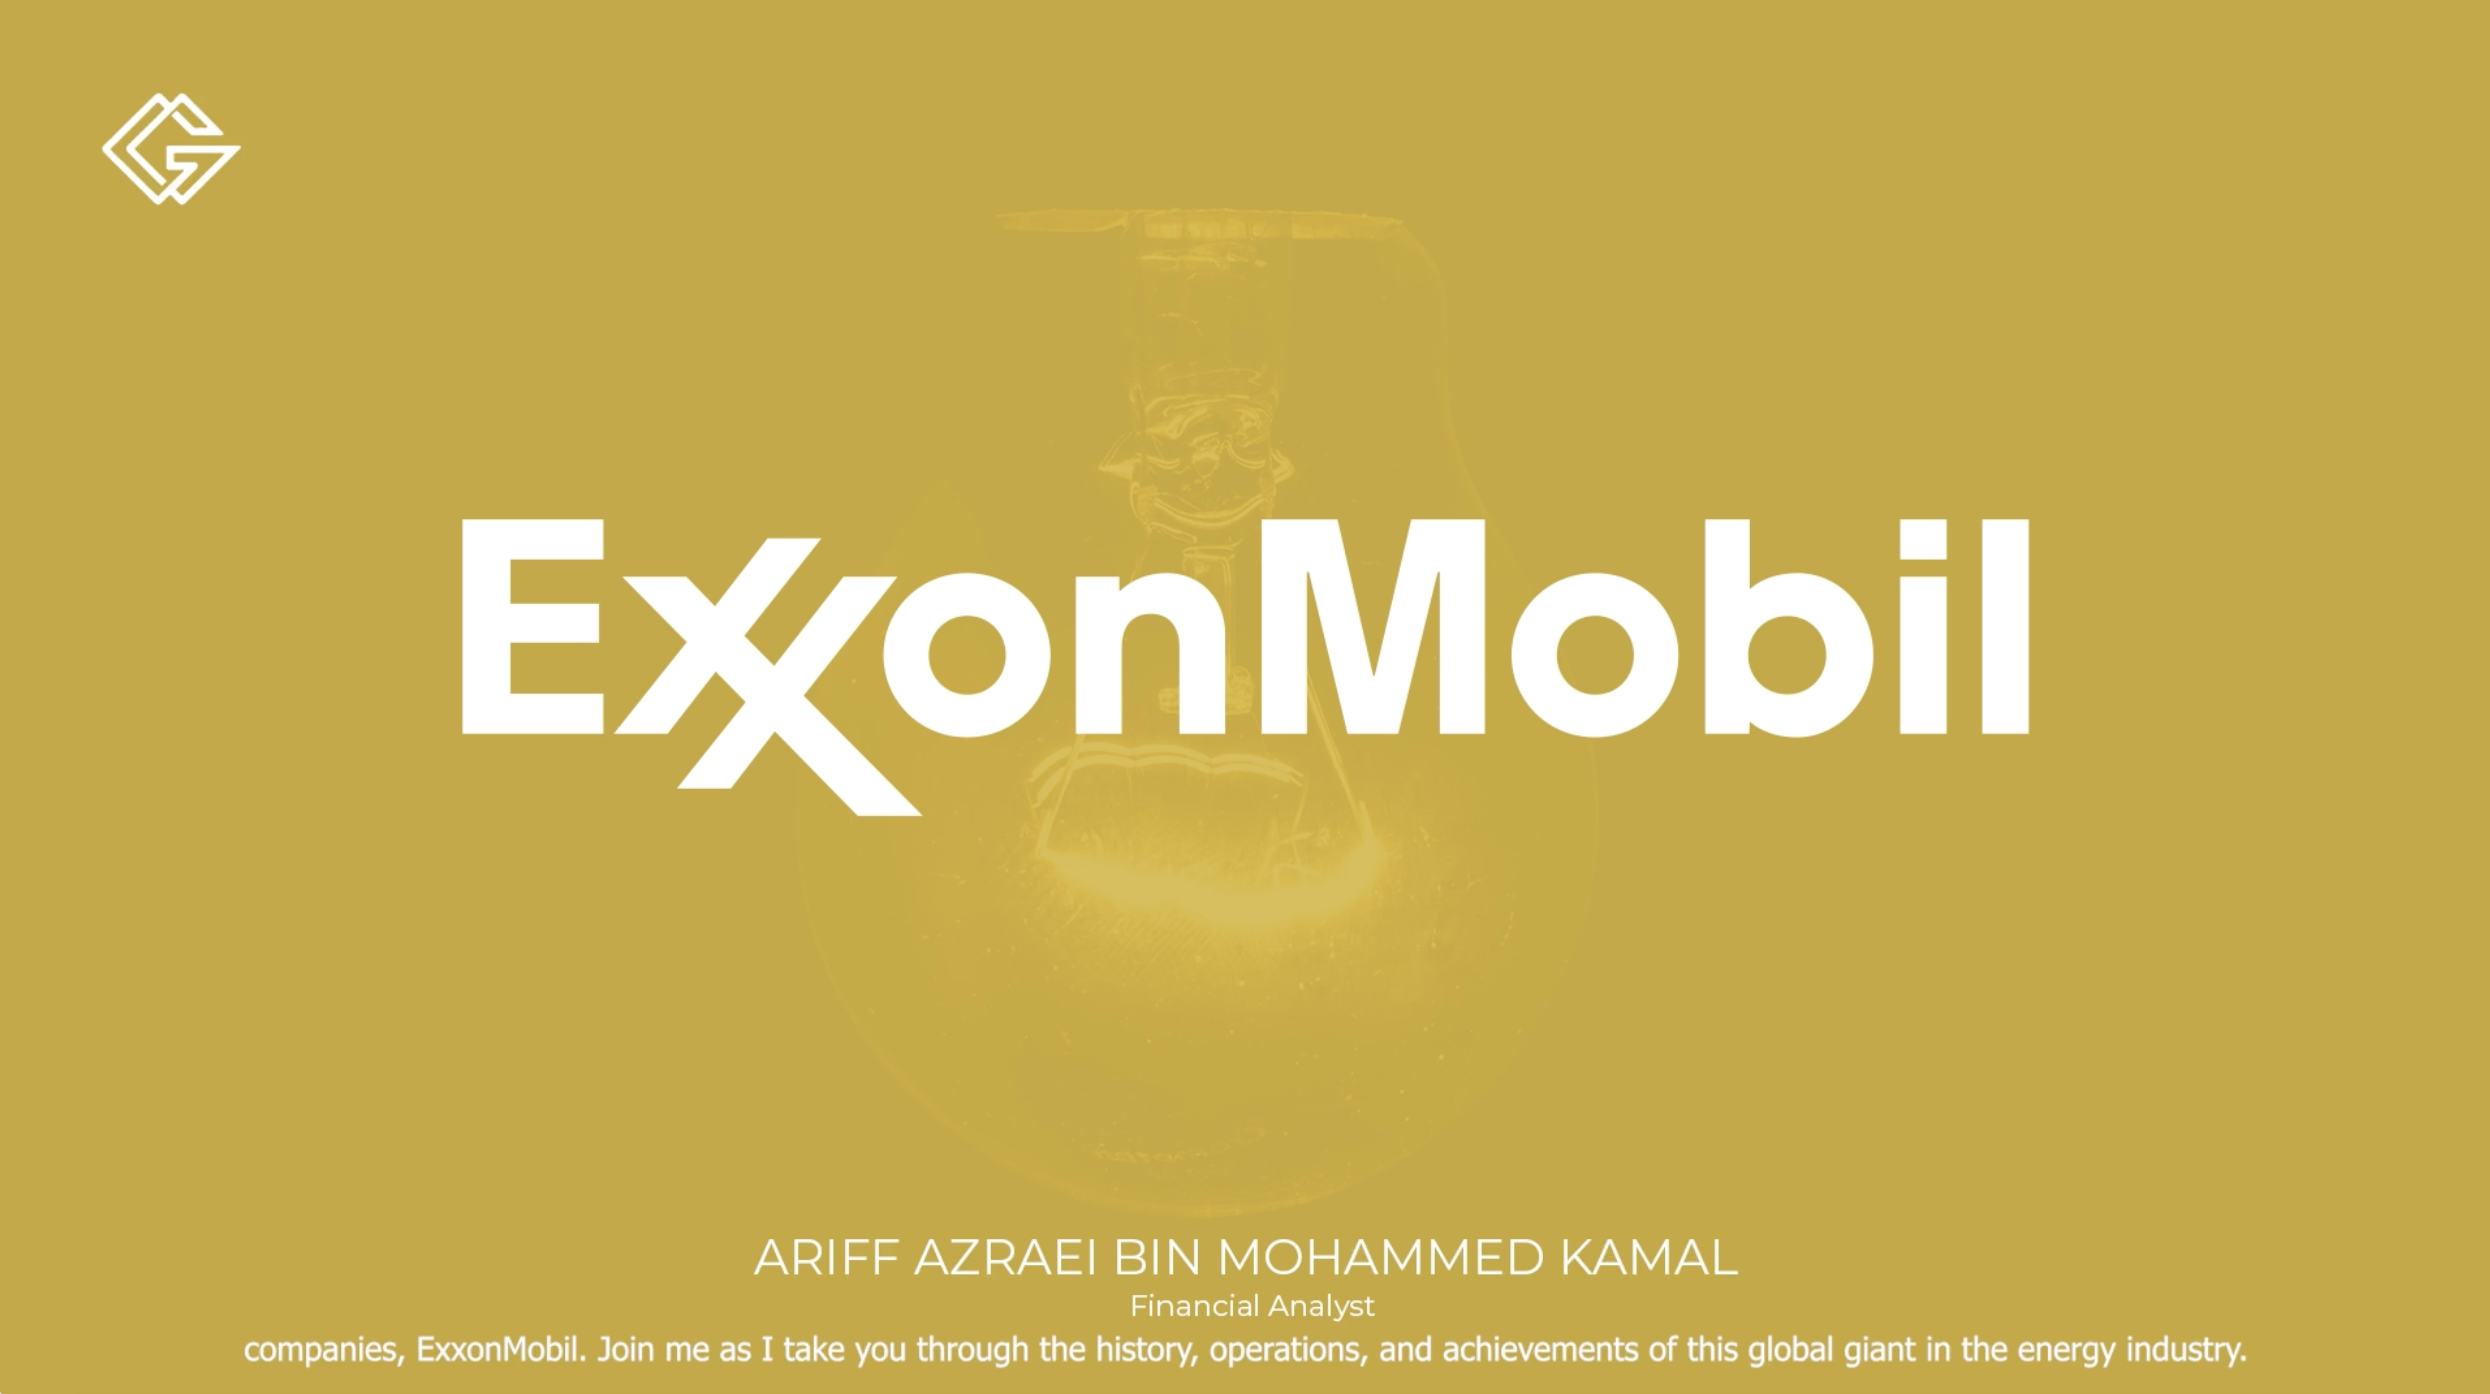 Golden Brokers | ExxonMobil | Ariff Azrael Bin Mohammed Kamal